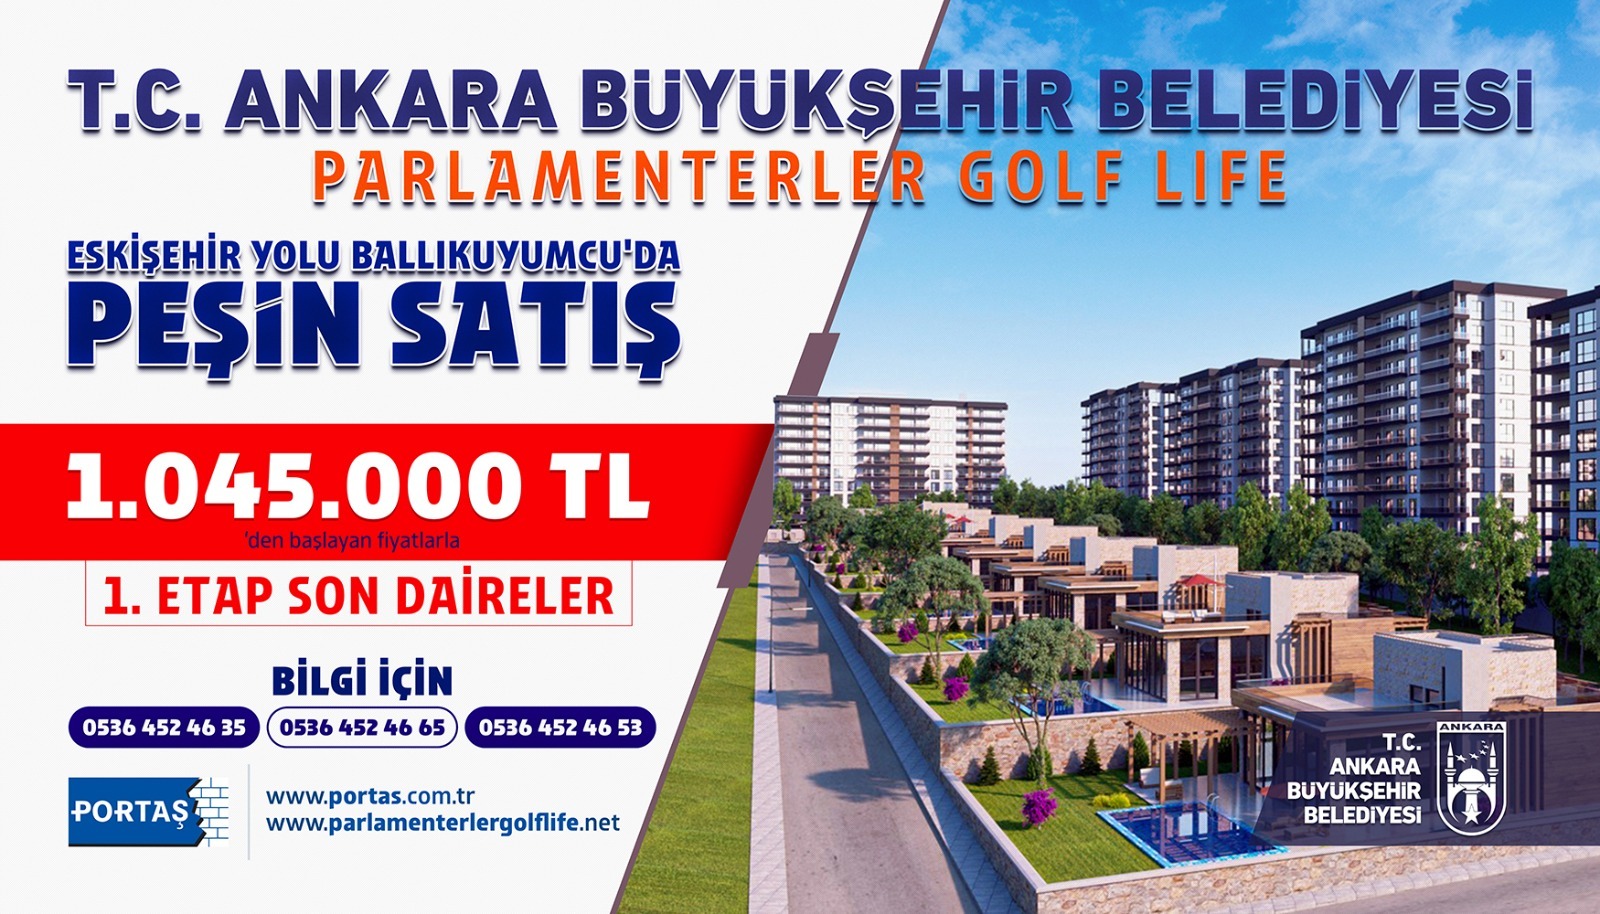 Ankara Büyükşehir’den Uygun Fiyatlı Konut İmkânı